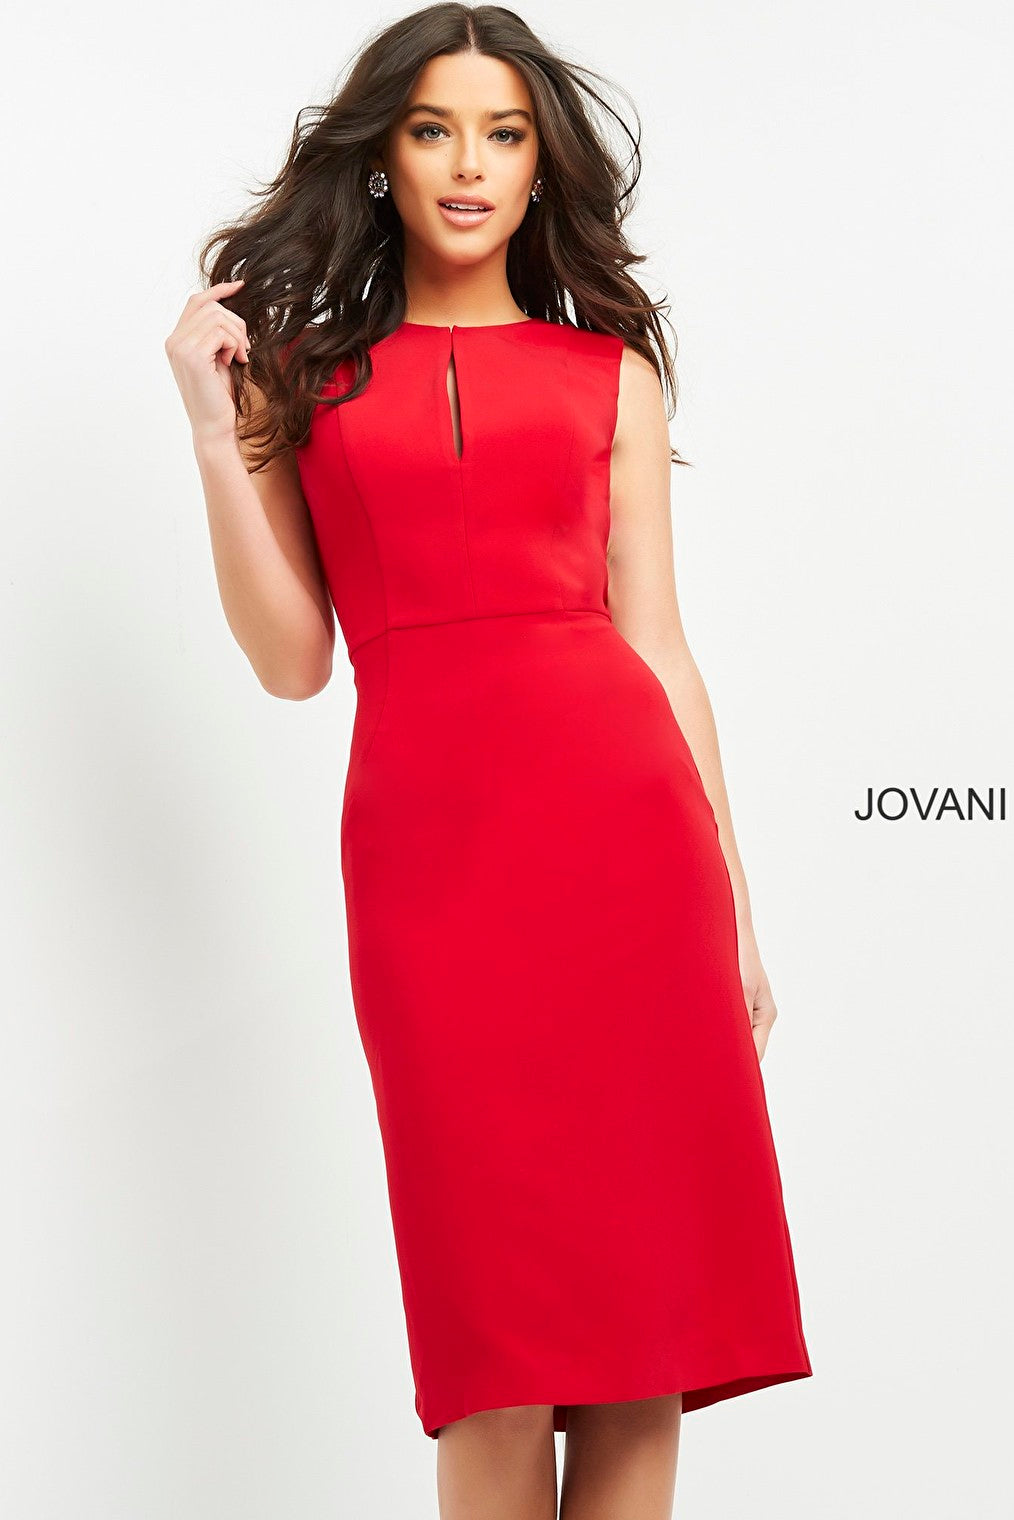 Red back slit Jovani cocktail dress 03567